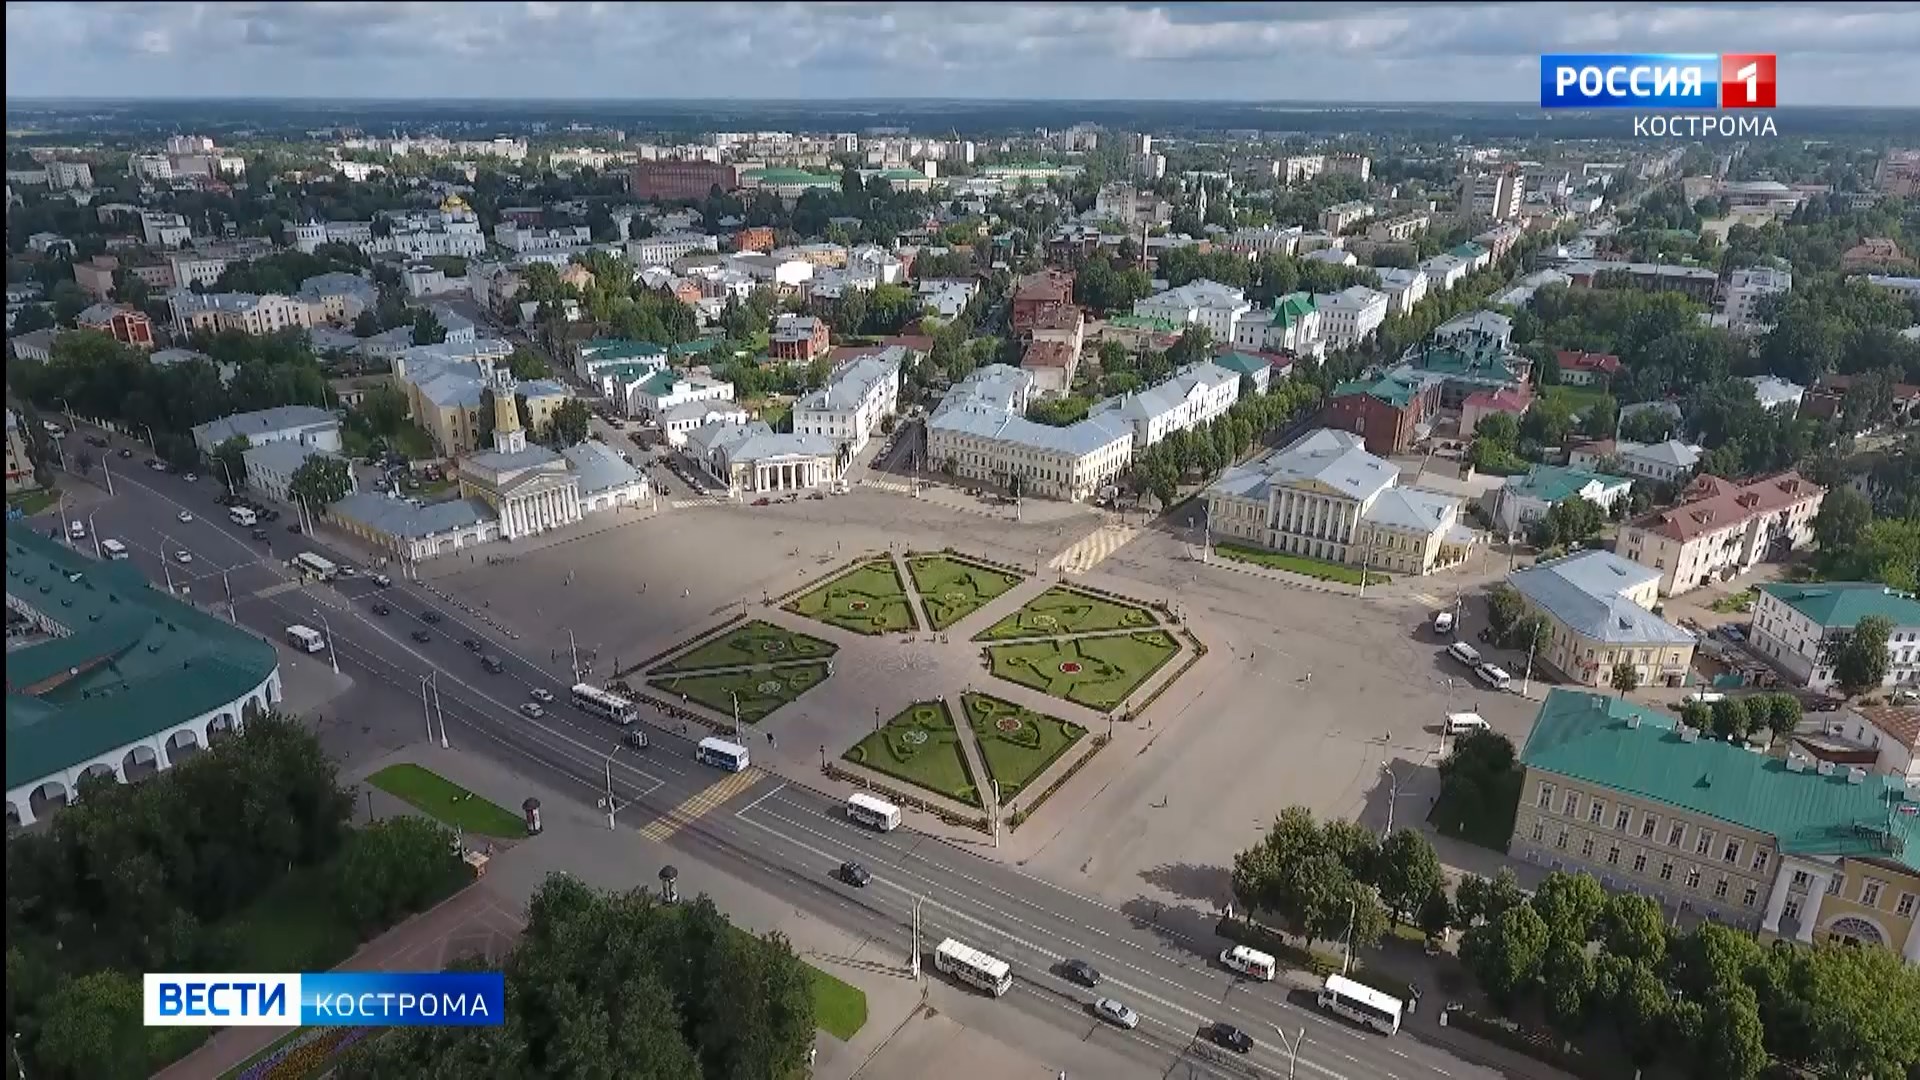 Кострома вошла в ТОП-5 небольших городов России по уровню цифровизации